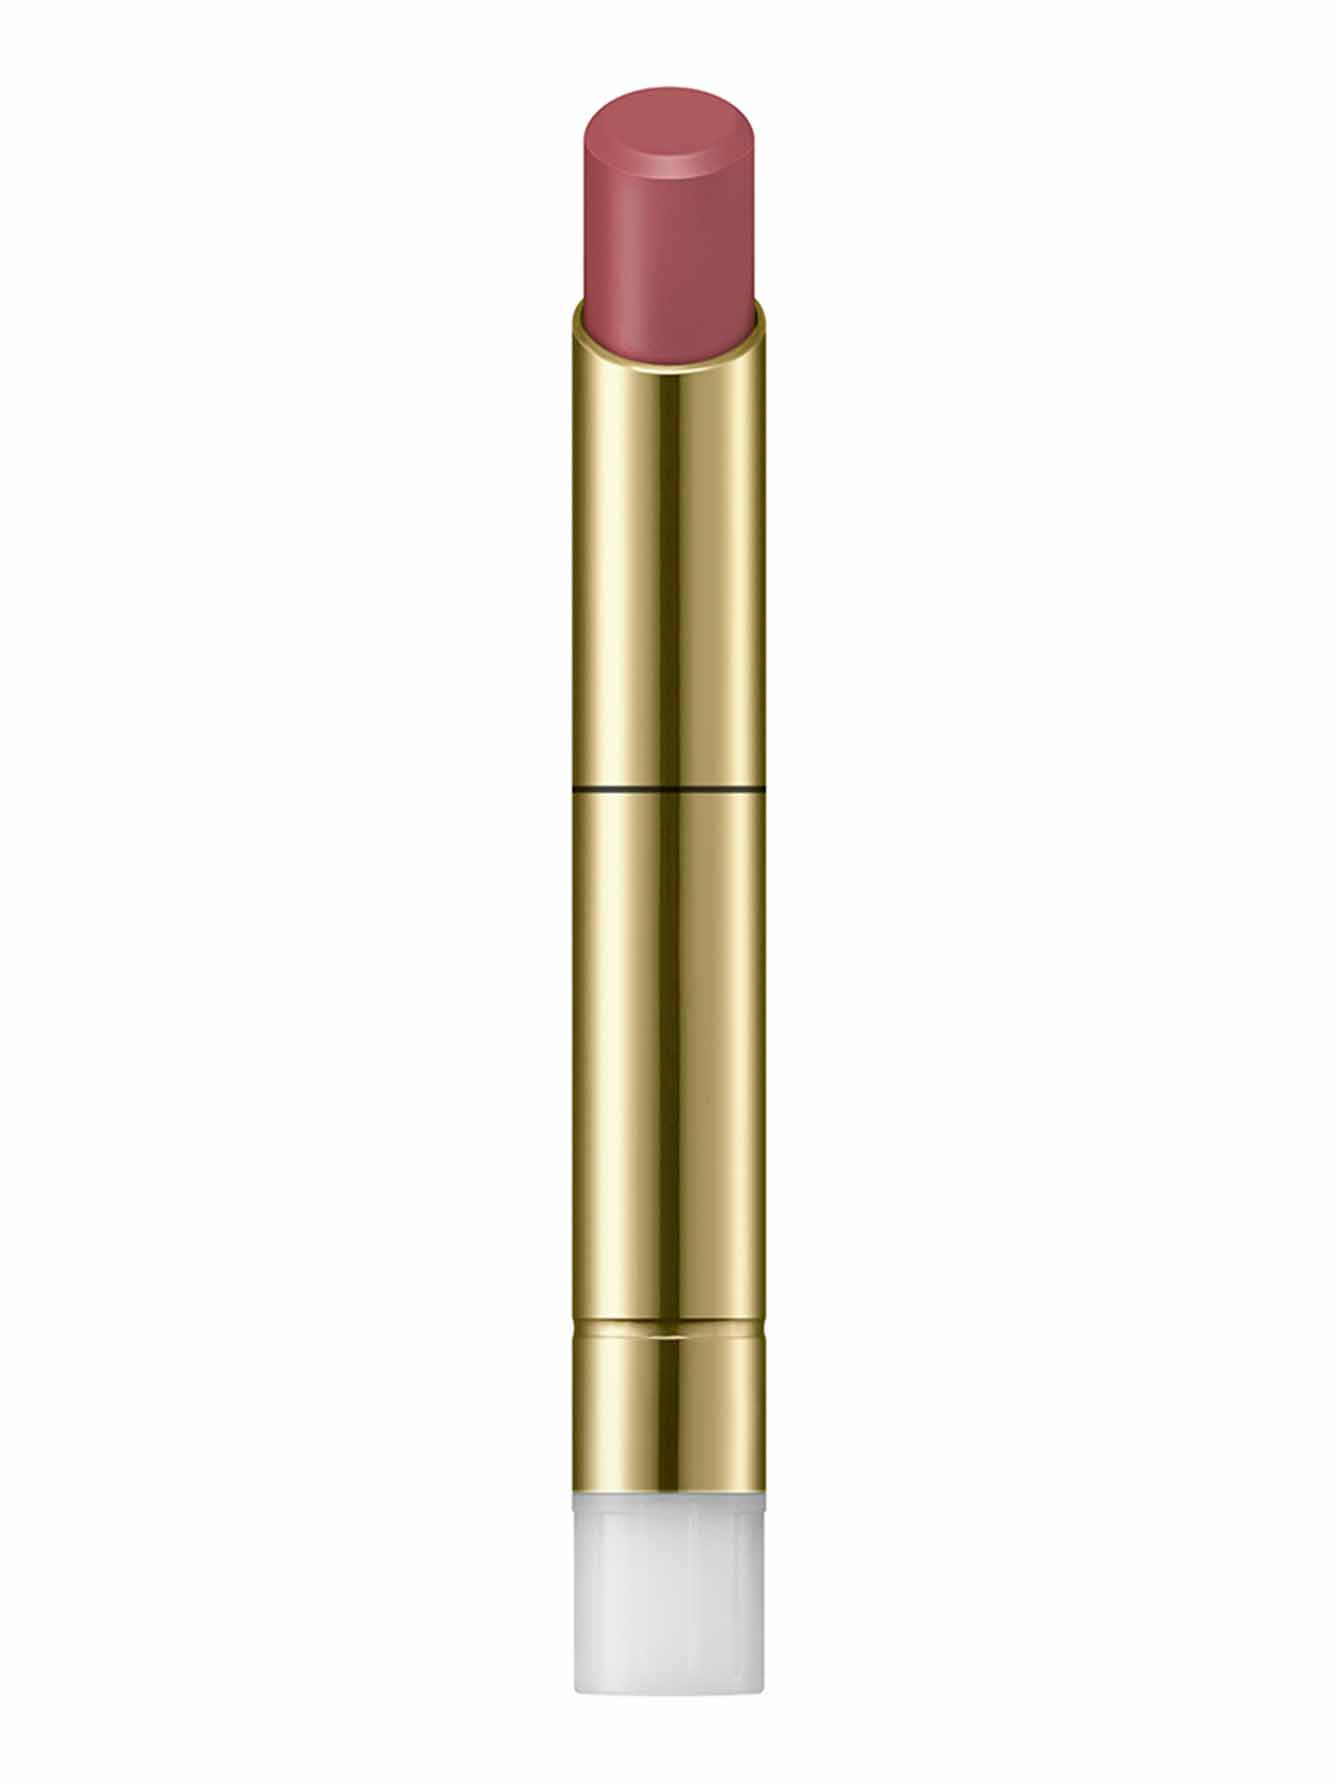 Рефил губной помады Contouring Lipstick, СL07 Pale Pink, 2 г - Общий вид